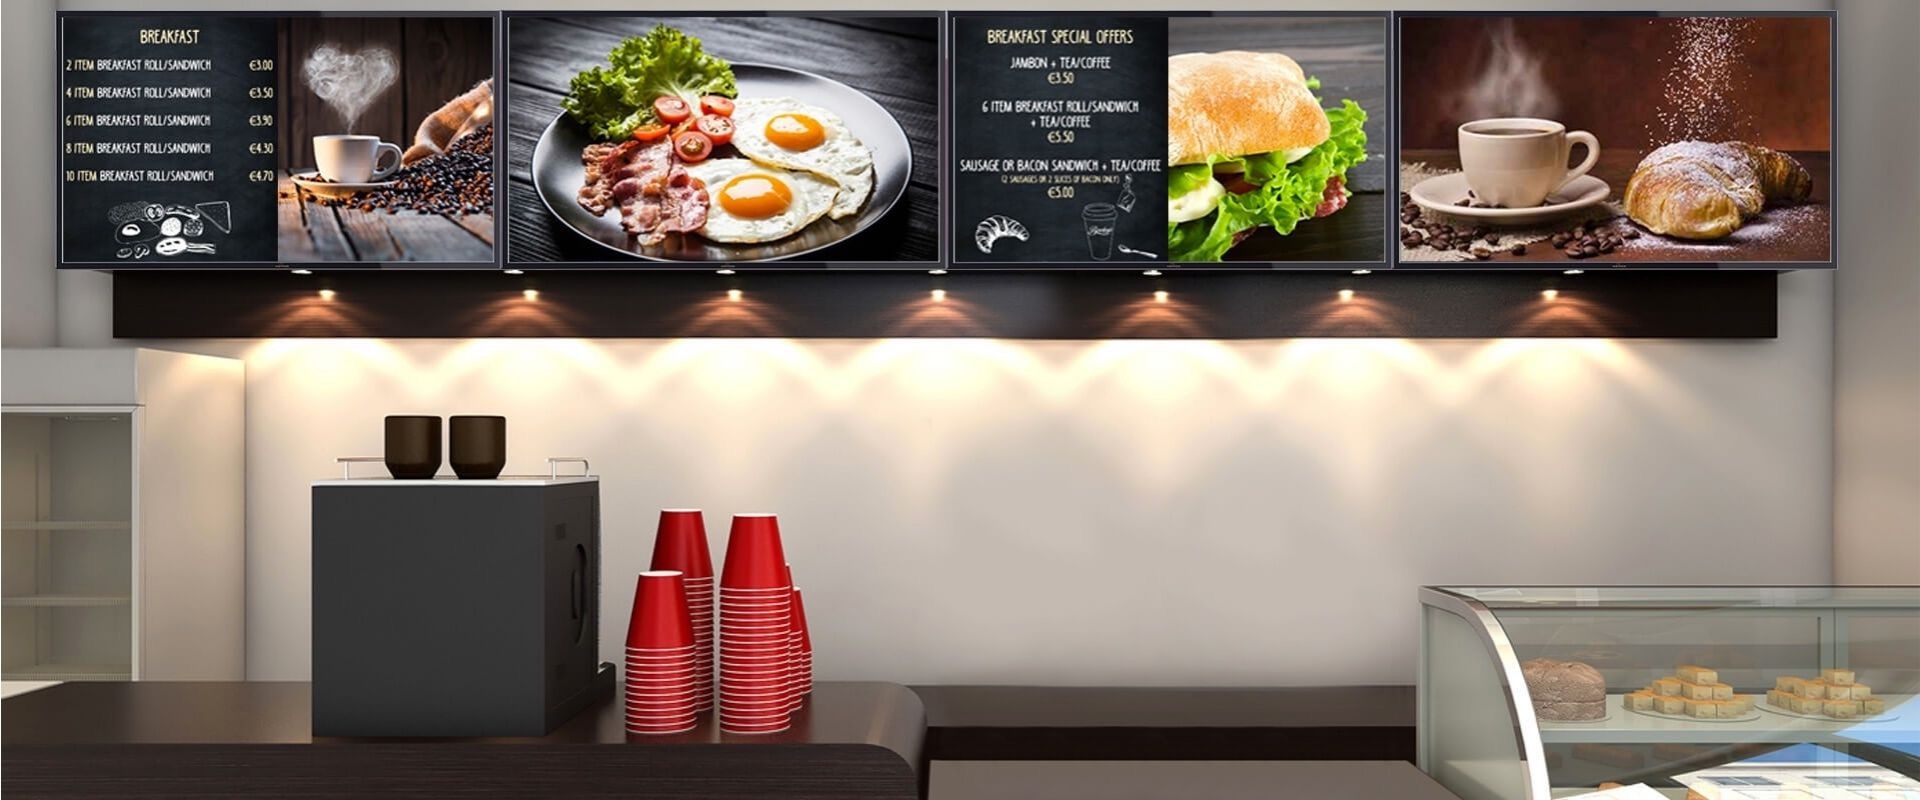 Restaurant Digital menu display